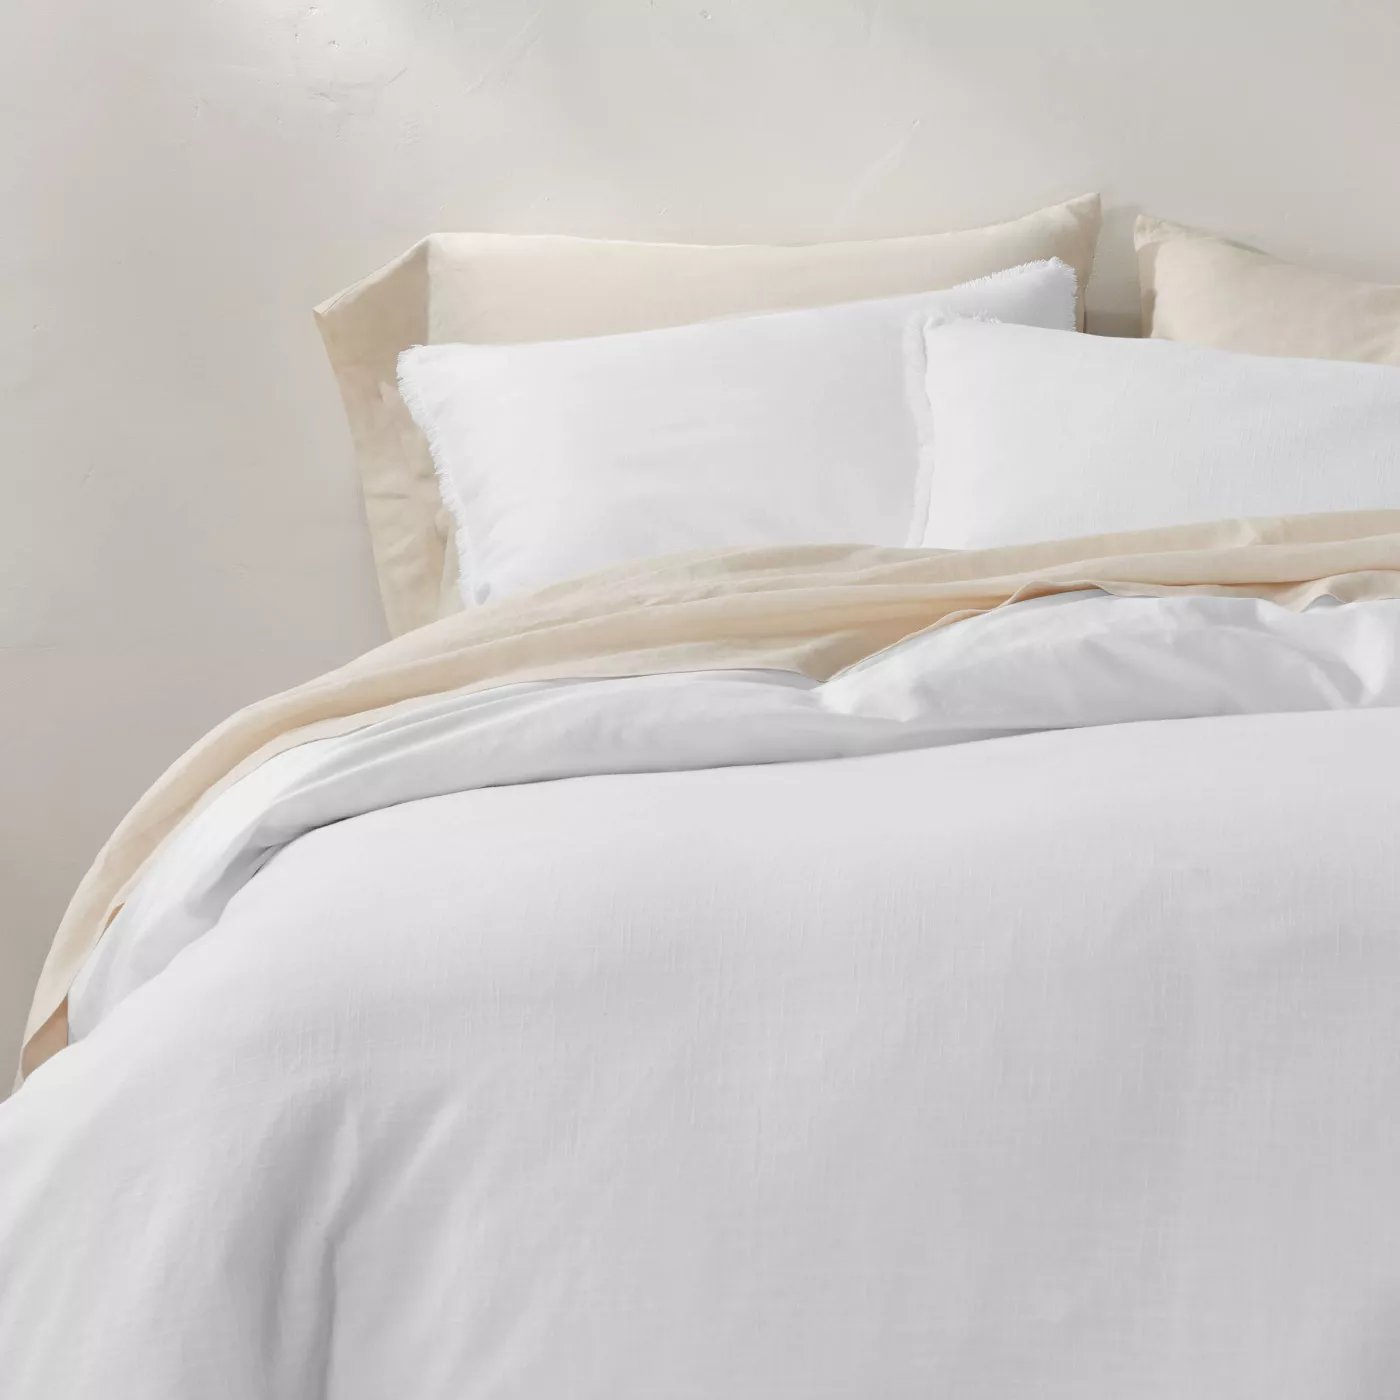 Shop Heavyweight Linen Blend Duvet & Pillow Sham Set - Casaluna™ from Target on Openhaus